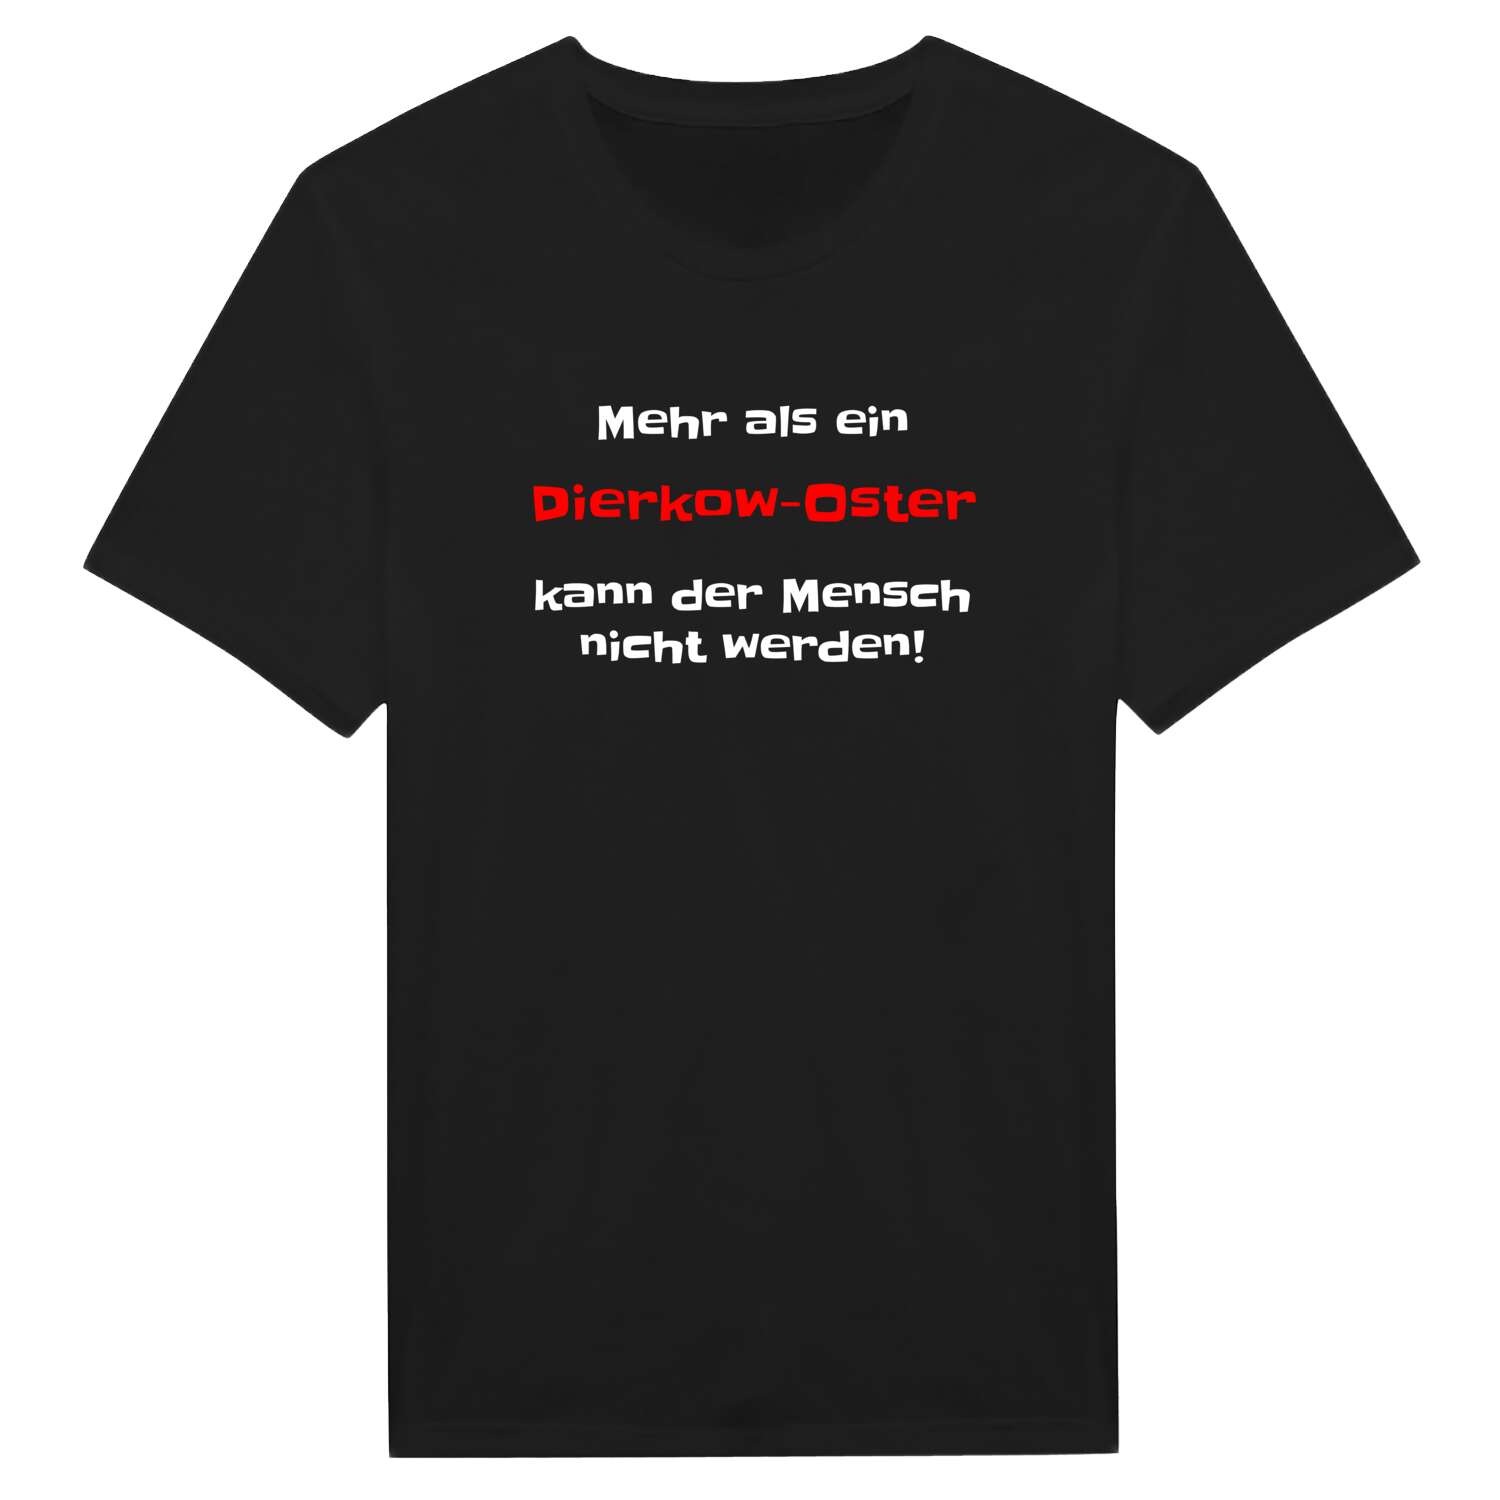 Dierkow-Ost T-Shirt »Mehr als ein«